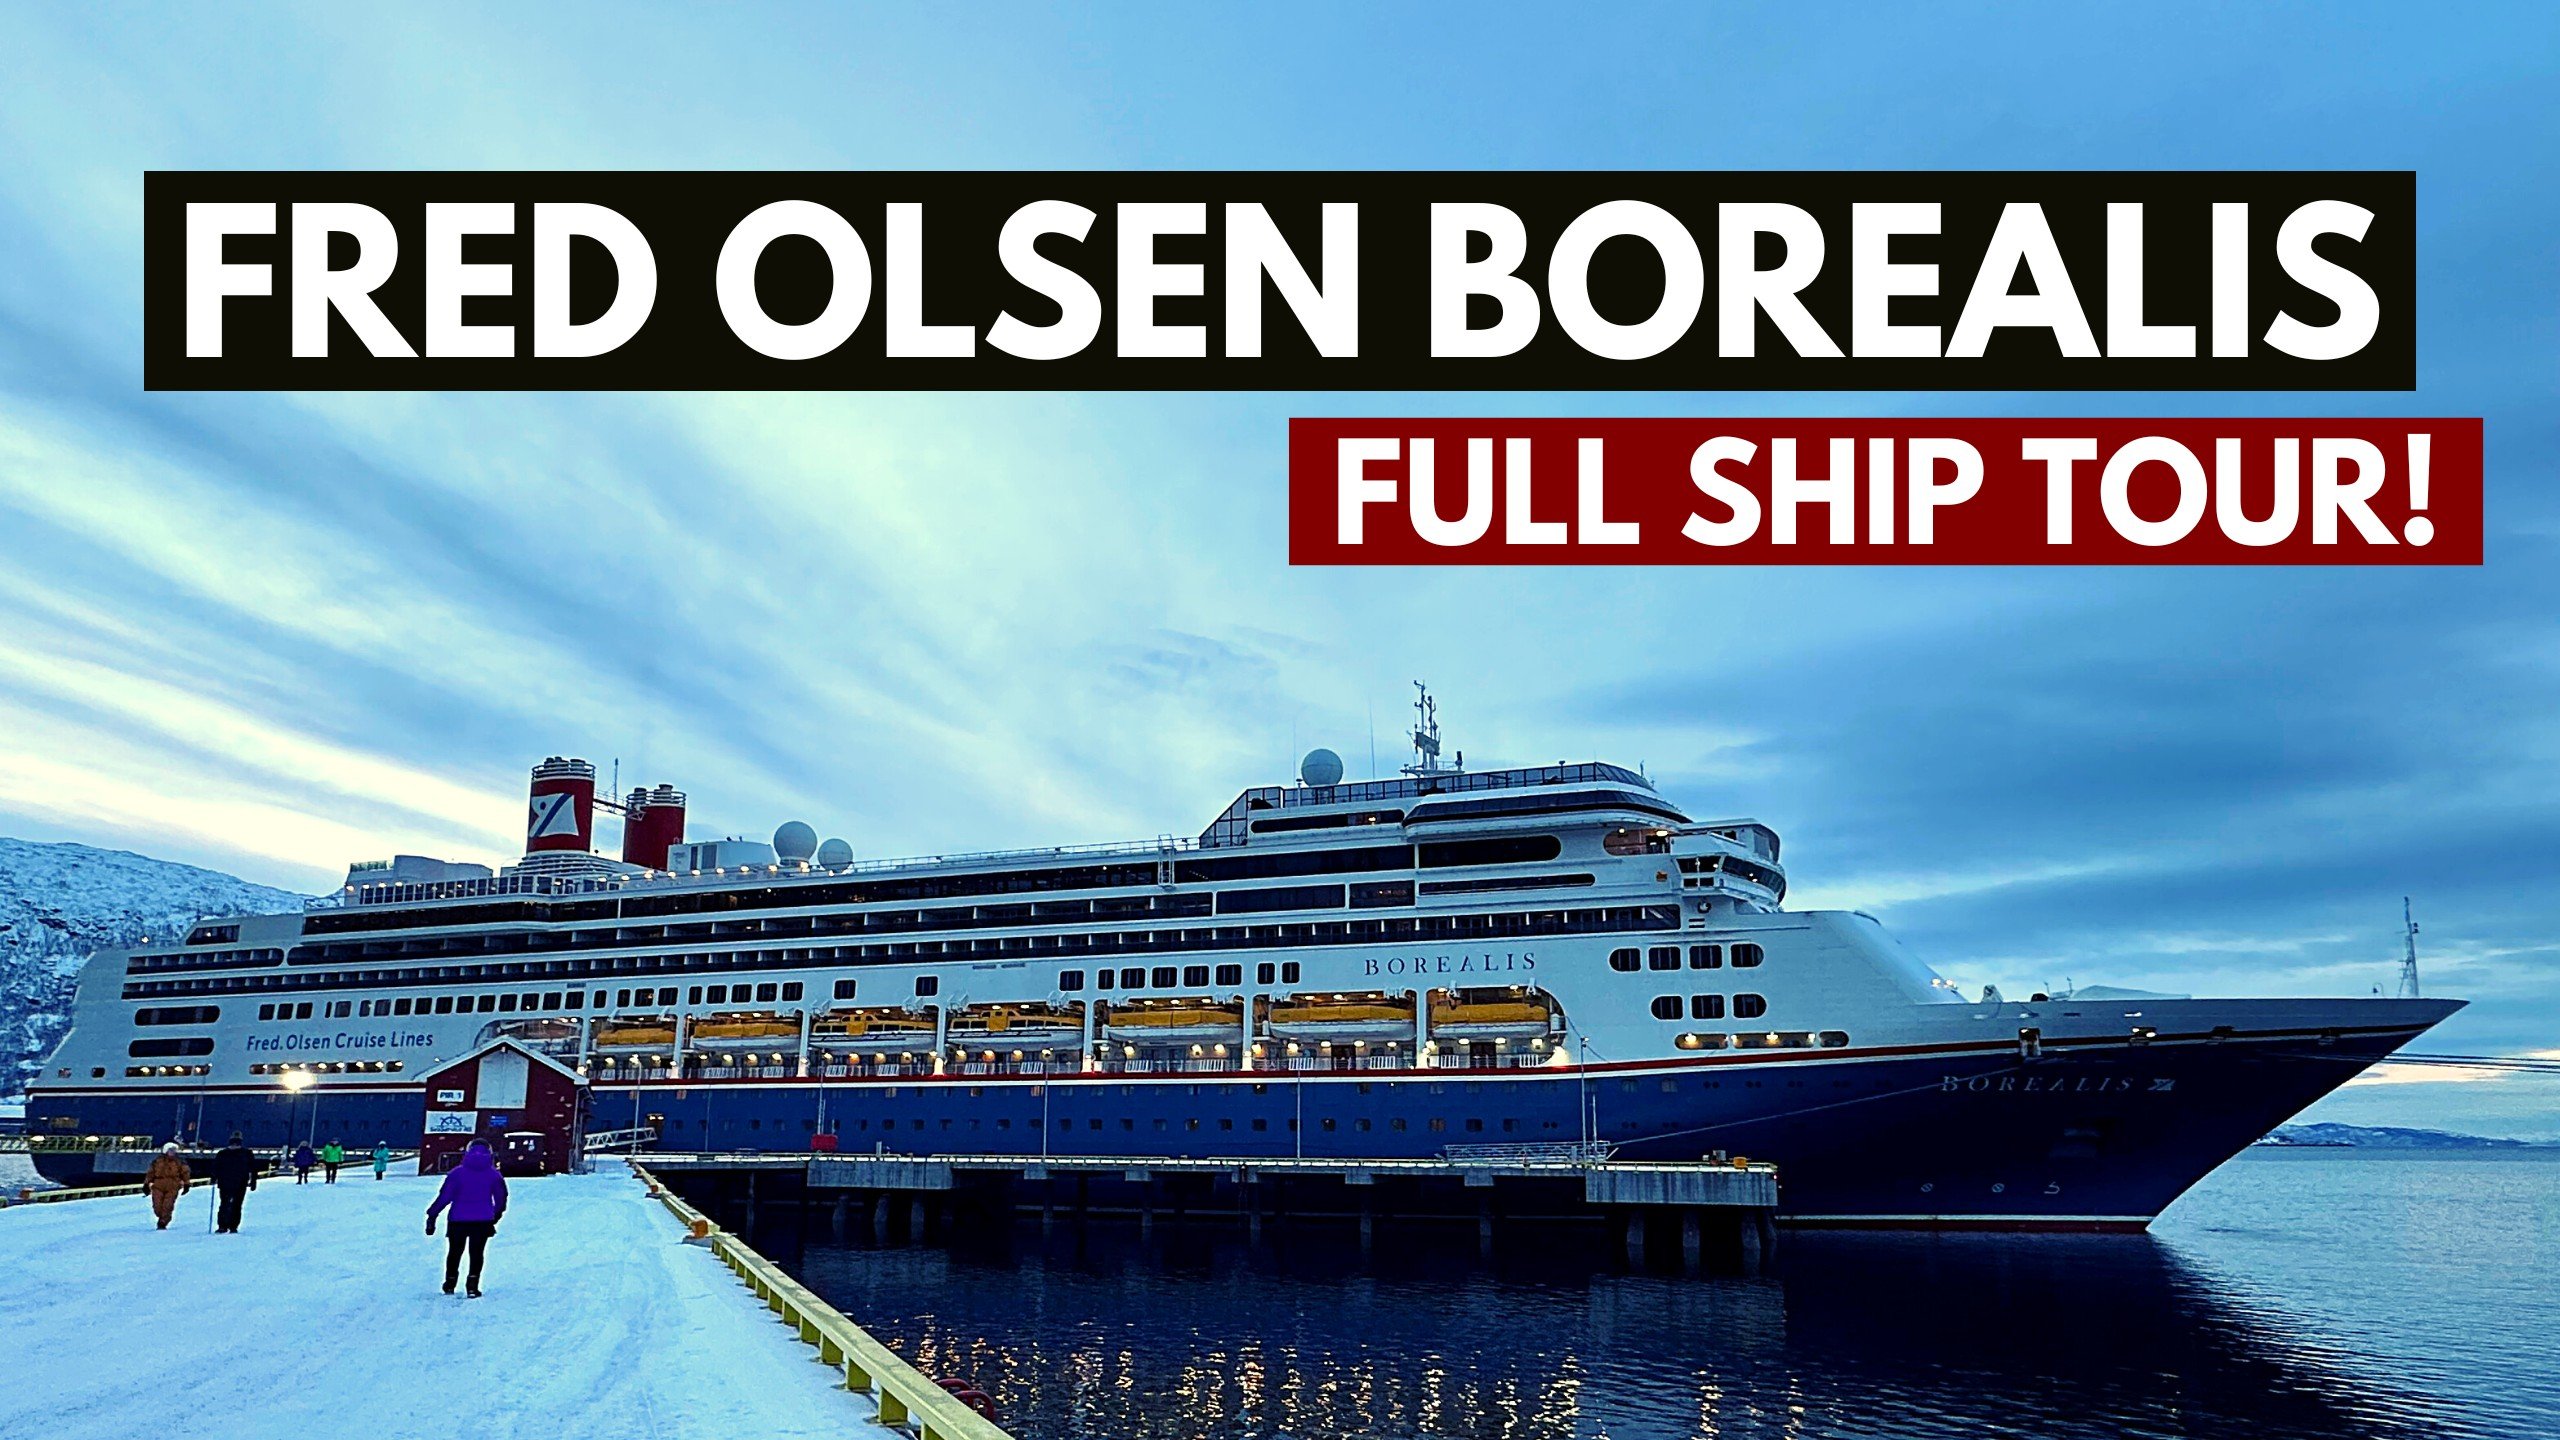 Fred Olsen Borealis ship tour image.